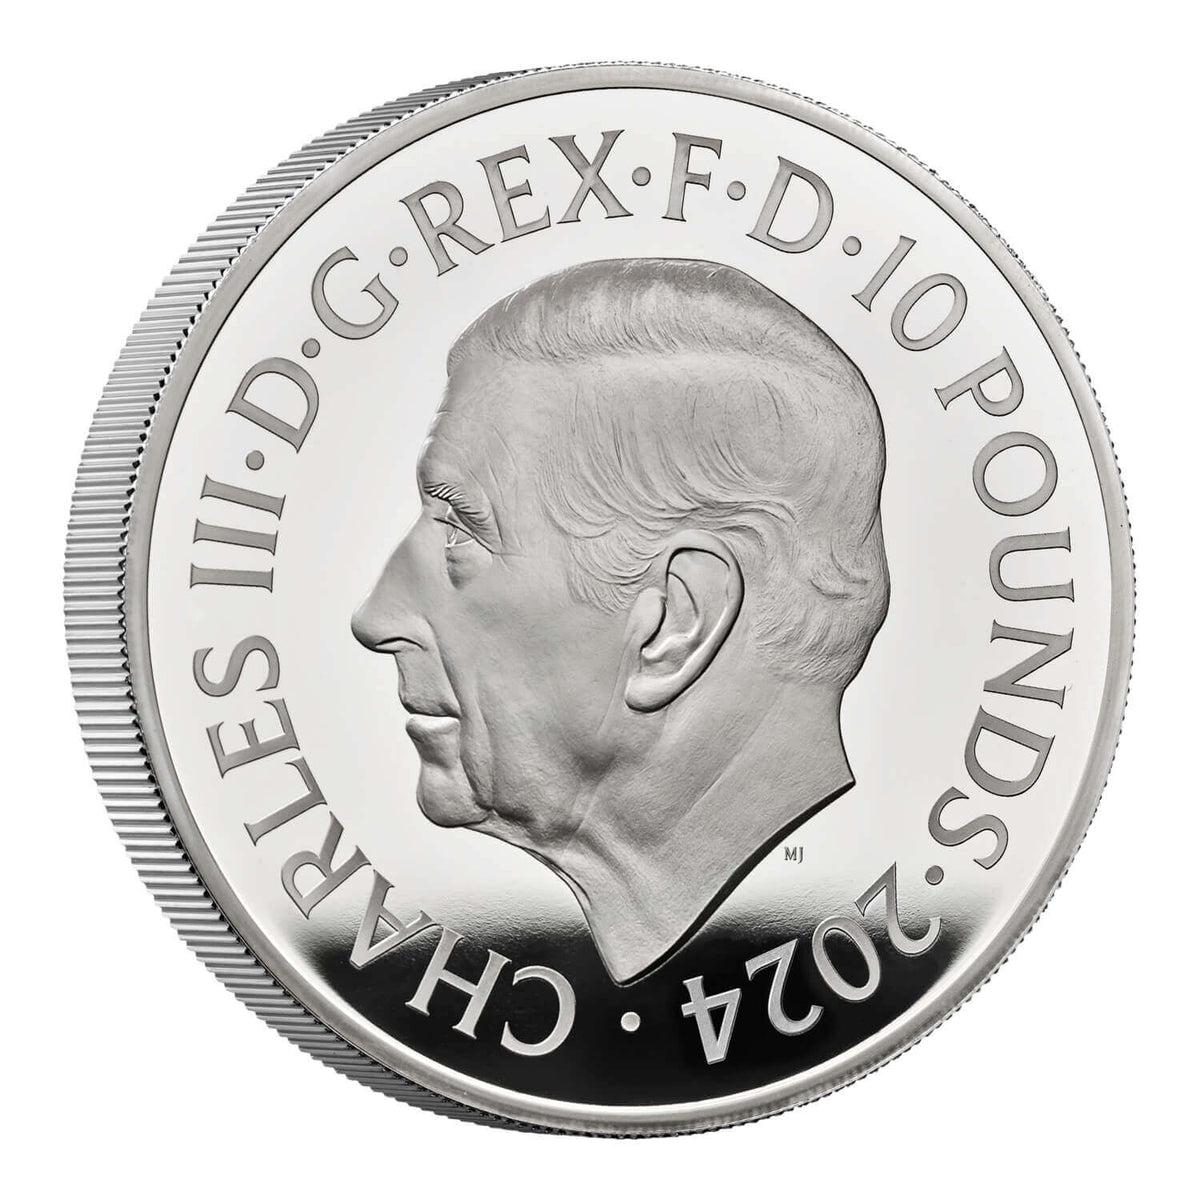 James Bond 1-Unzen-Silbermünze in Proof-Form – nummerierte Ausgabe der 1980er Jahre – von der Royal Mint